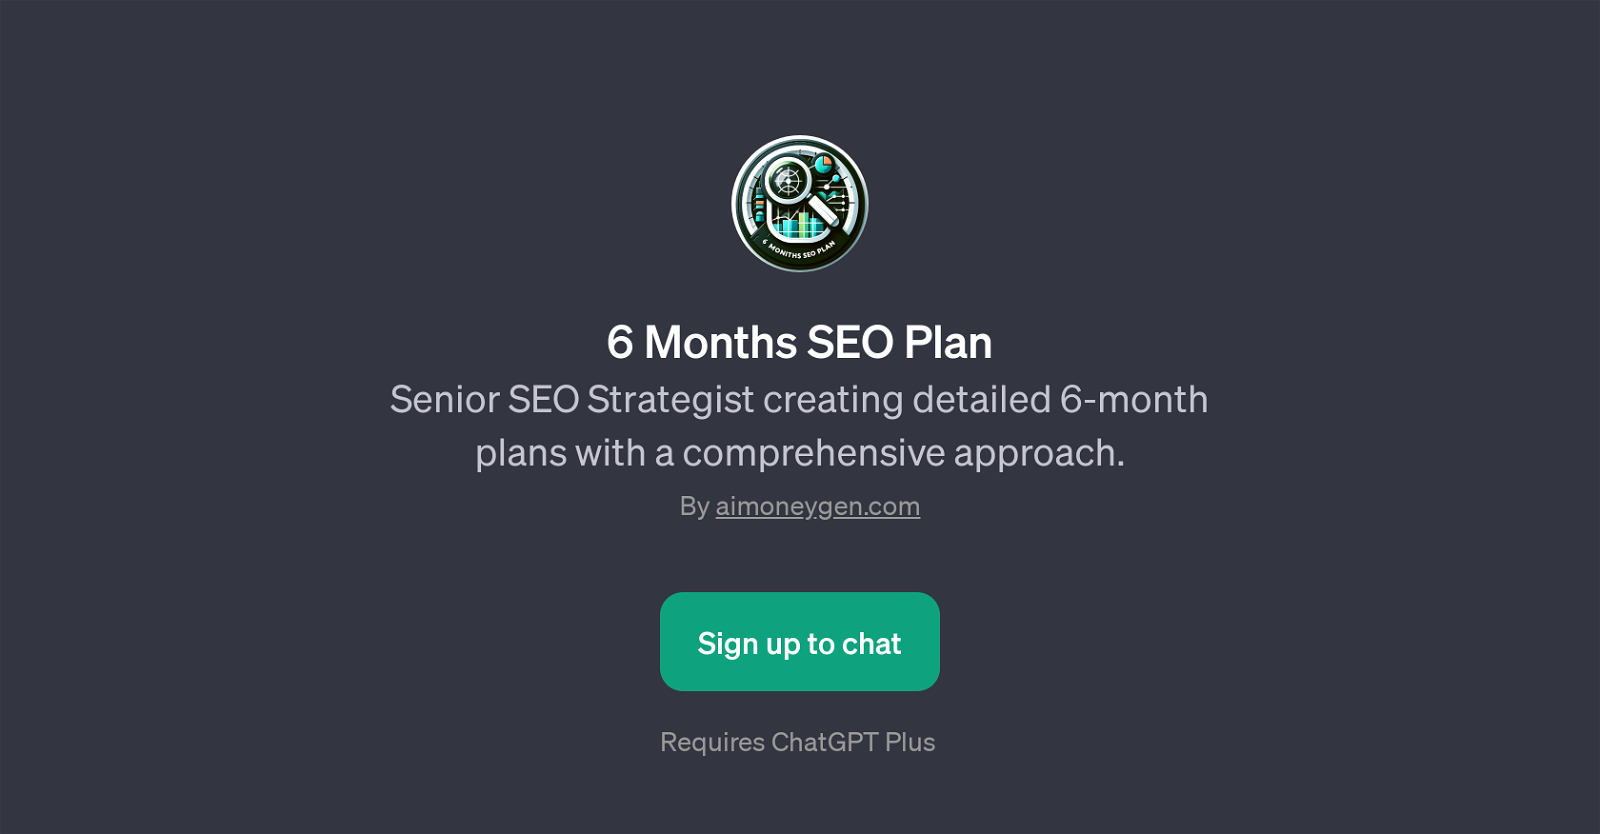 6 Months SEO Plan website